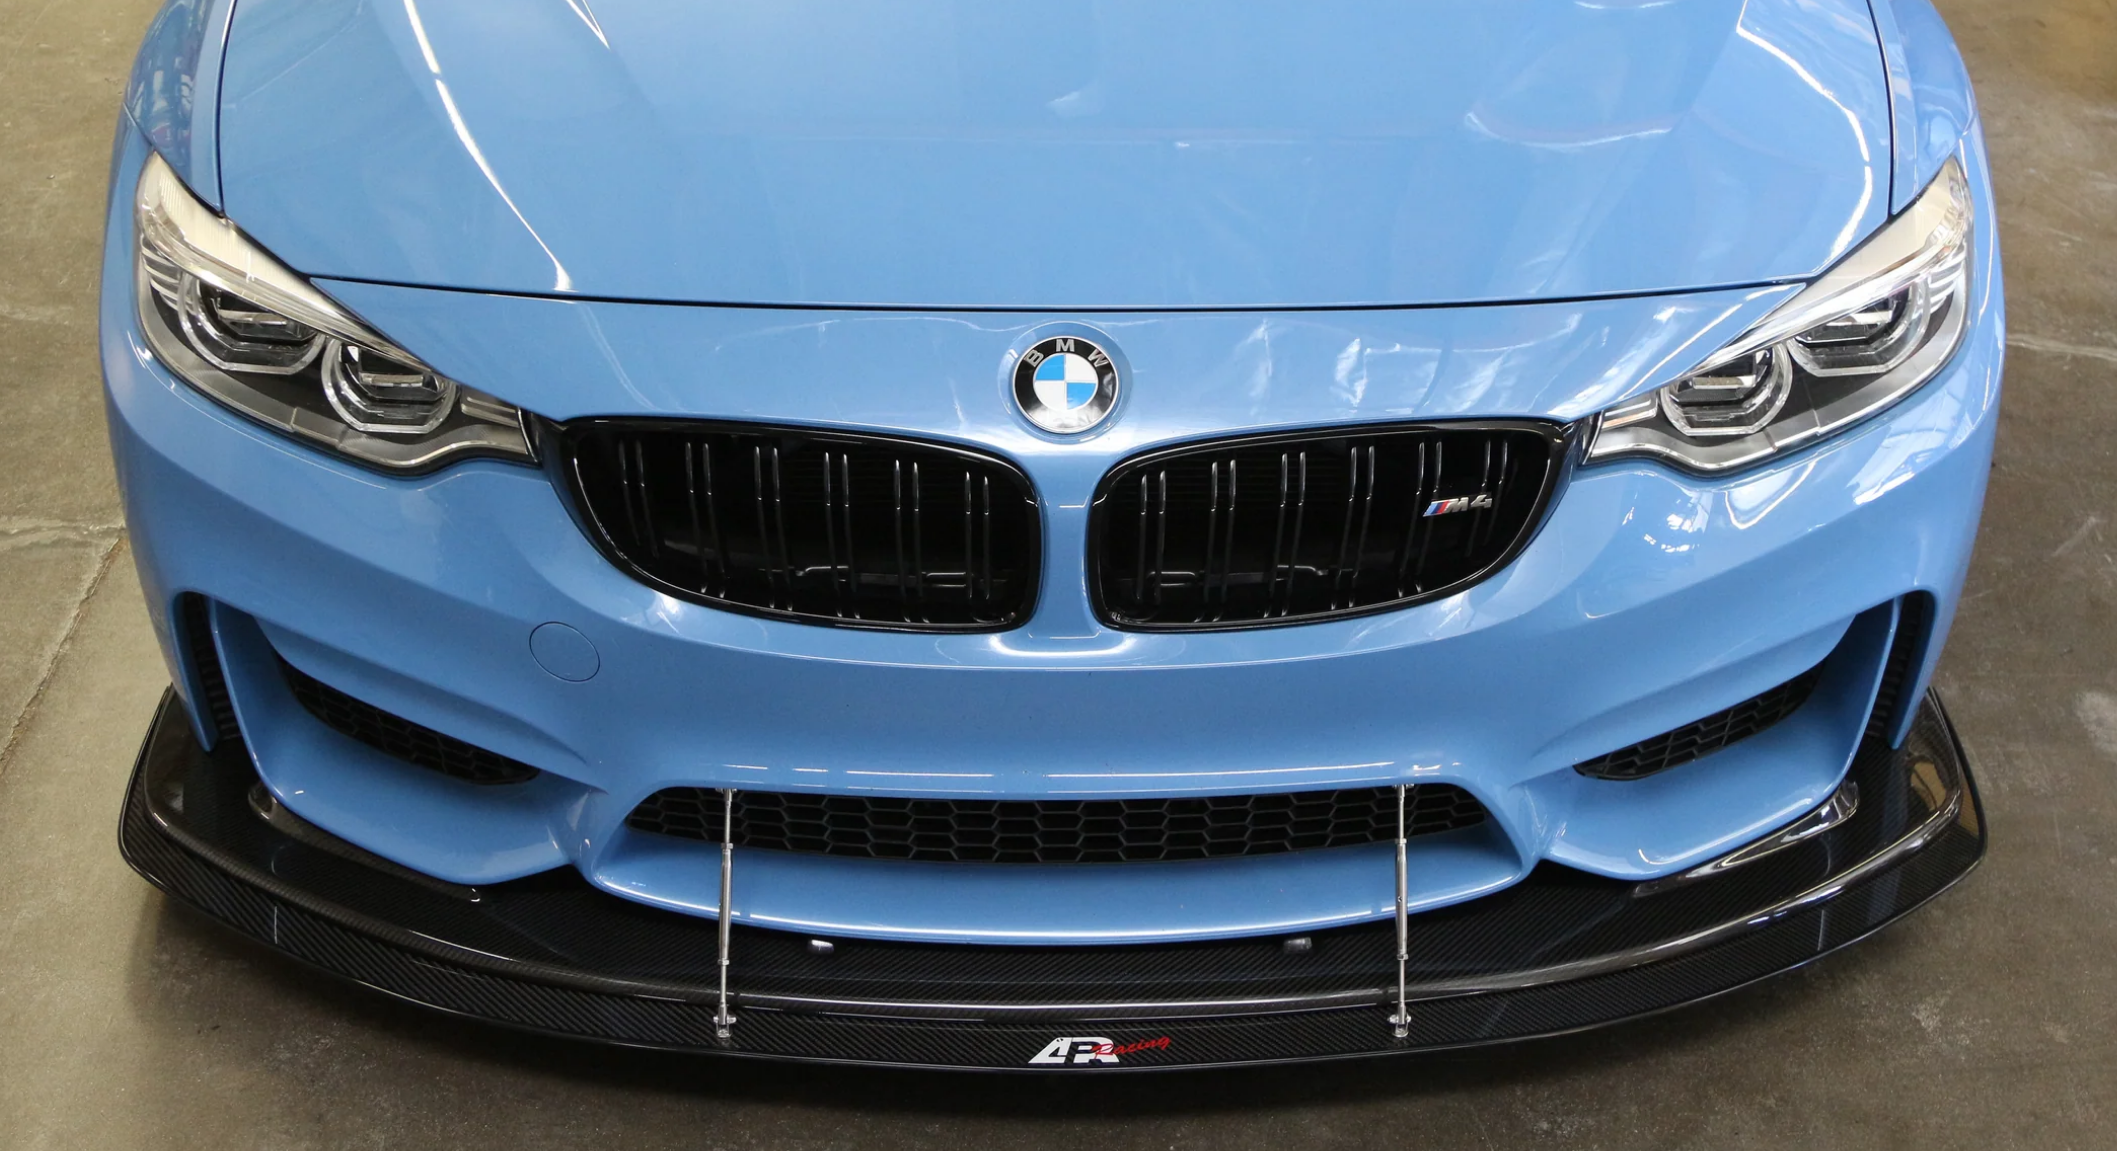 BMW F82 M4 / F80 M3 with APR Performance Lip Front Wind Splitter